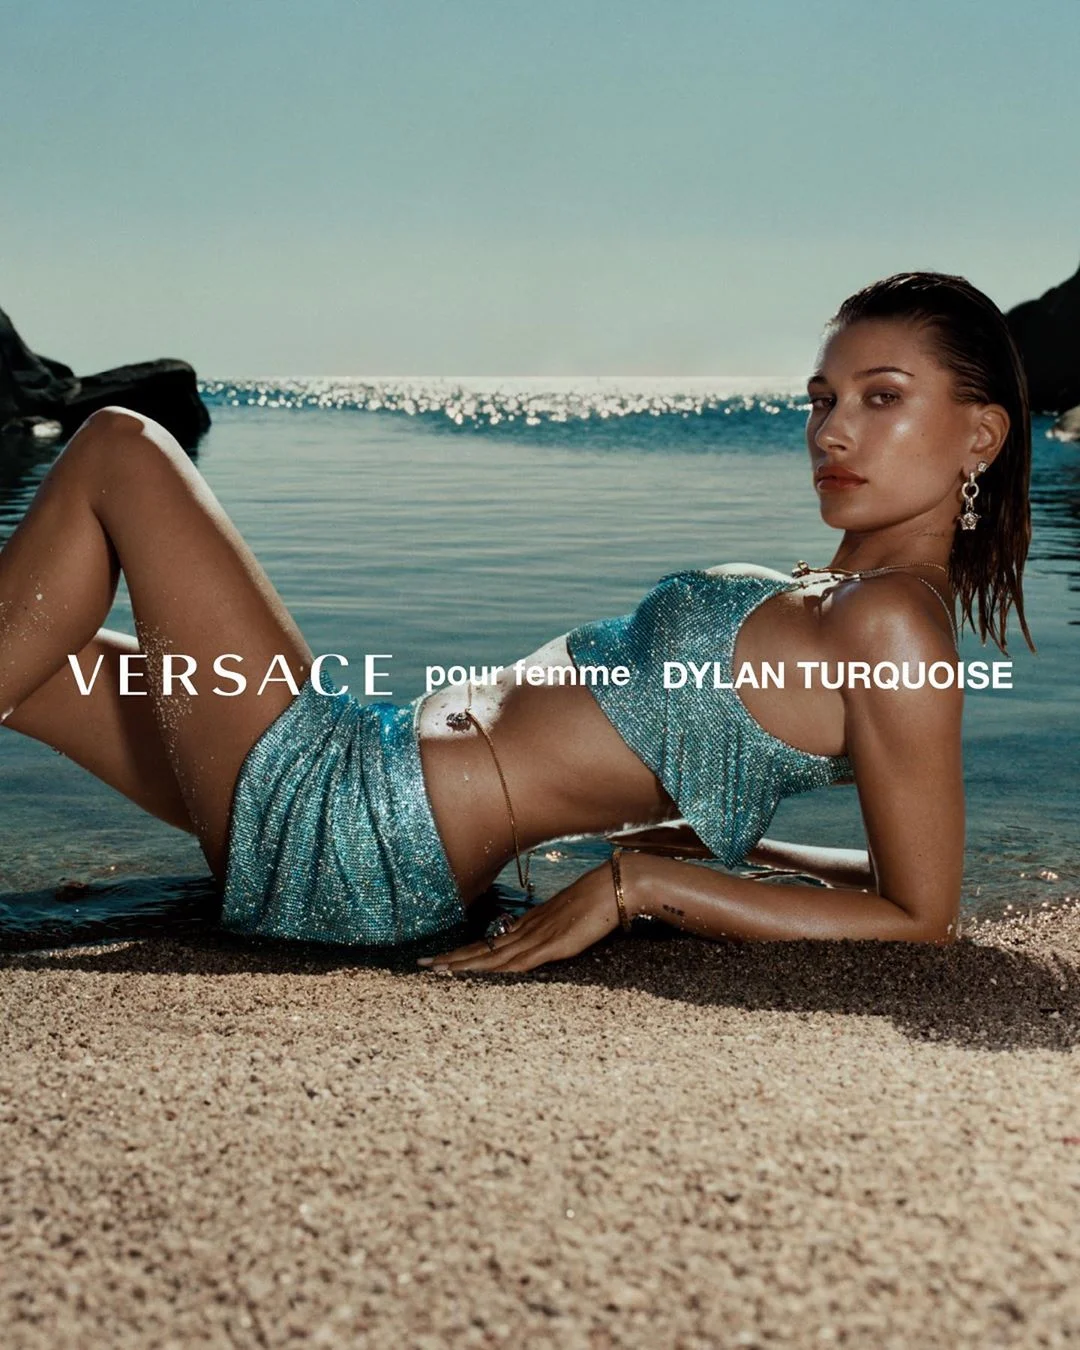 Итальянская чувственность: Белла Хадид и Хейли Бибер снялись в сексуальной рекламе Versace - фото 491420